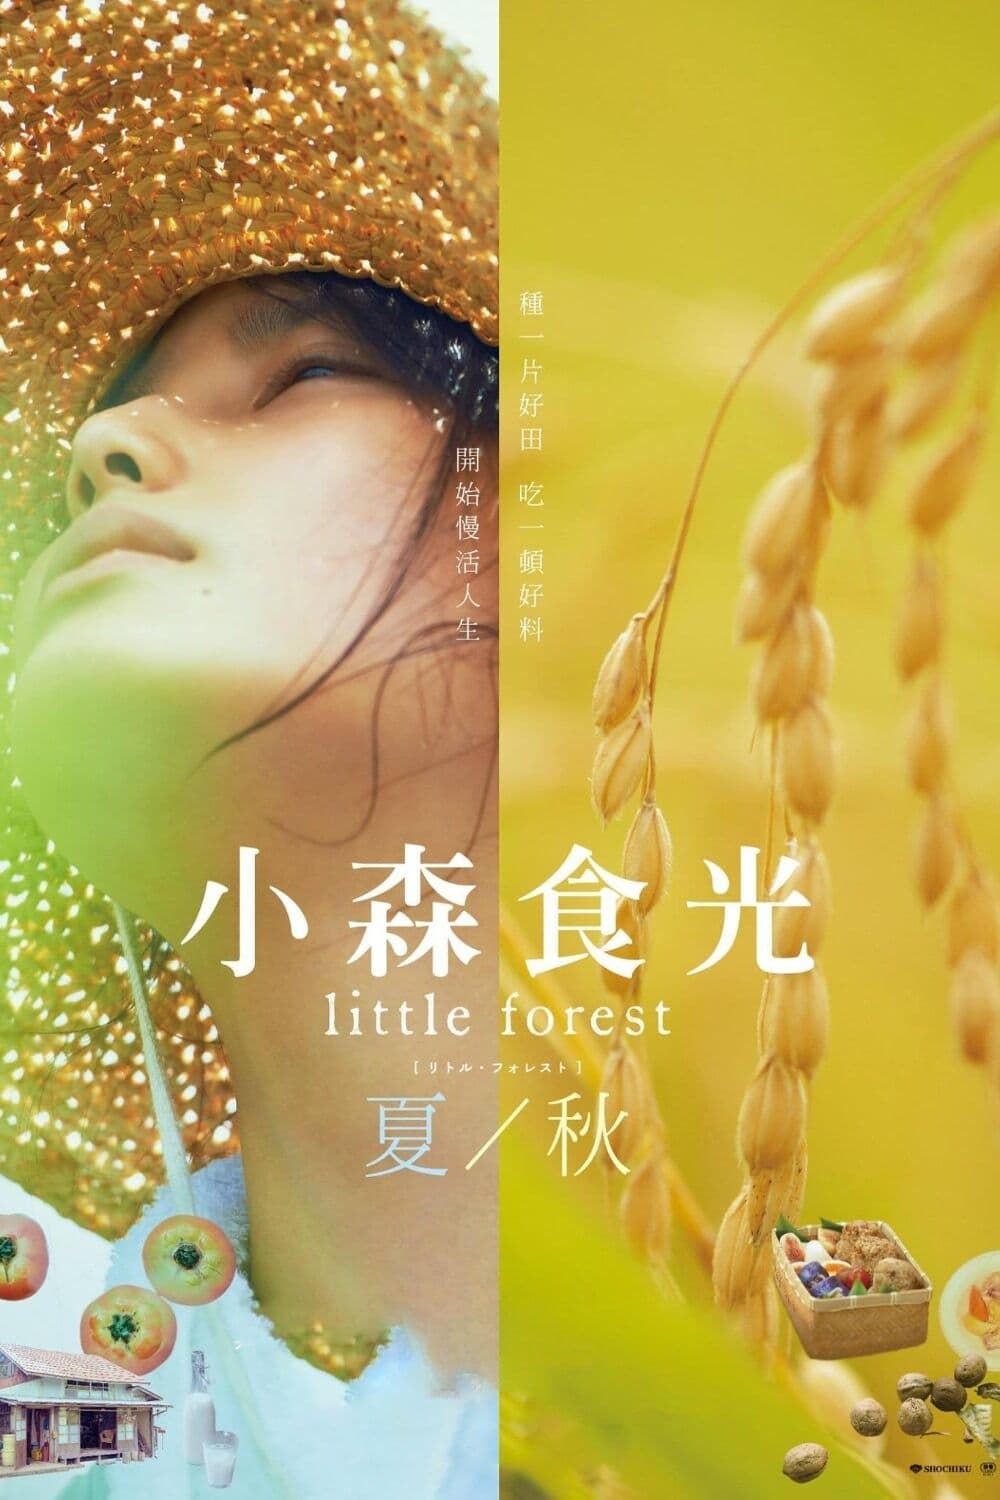 Khu Rừng Nhỏ - Hạ/Thu (Little Forest: Summer/Autumn) [2014]